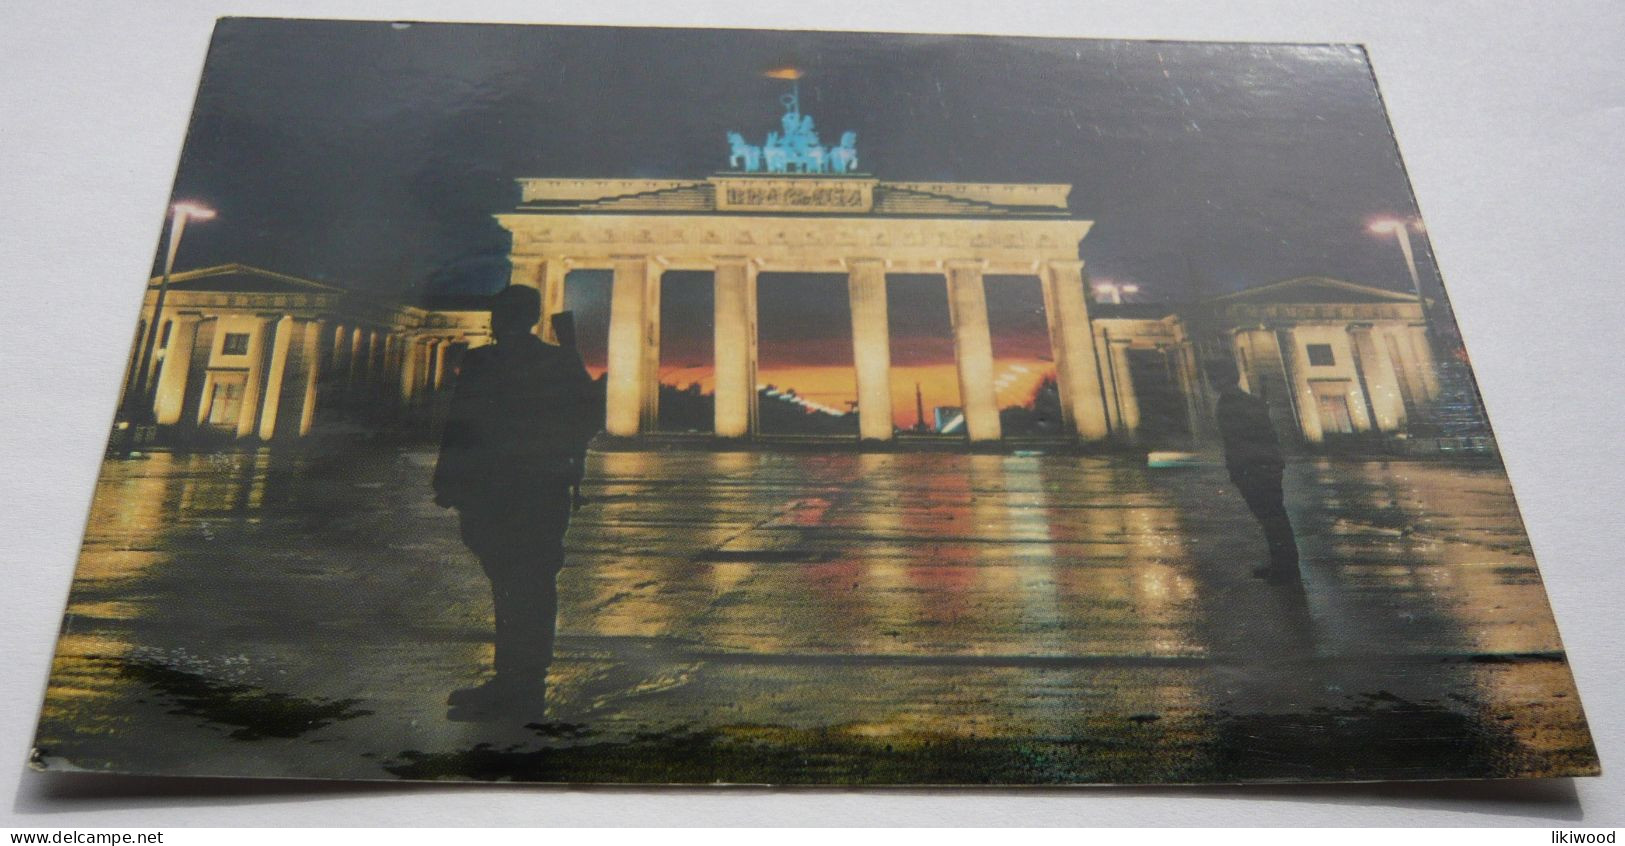 Berlin Nachts Am Brandenburger Tor - Brandenburger Tor